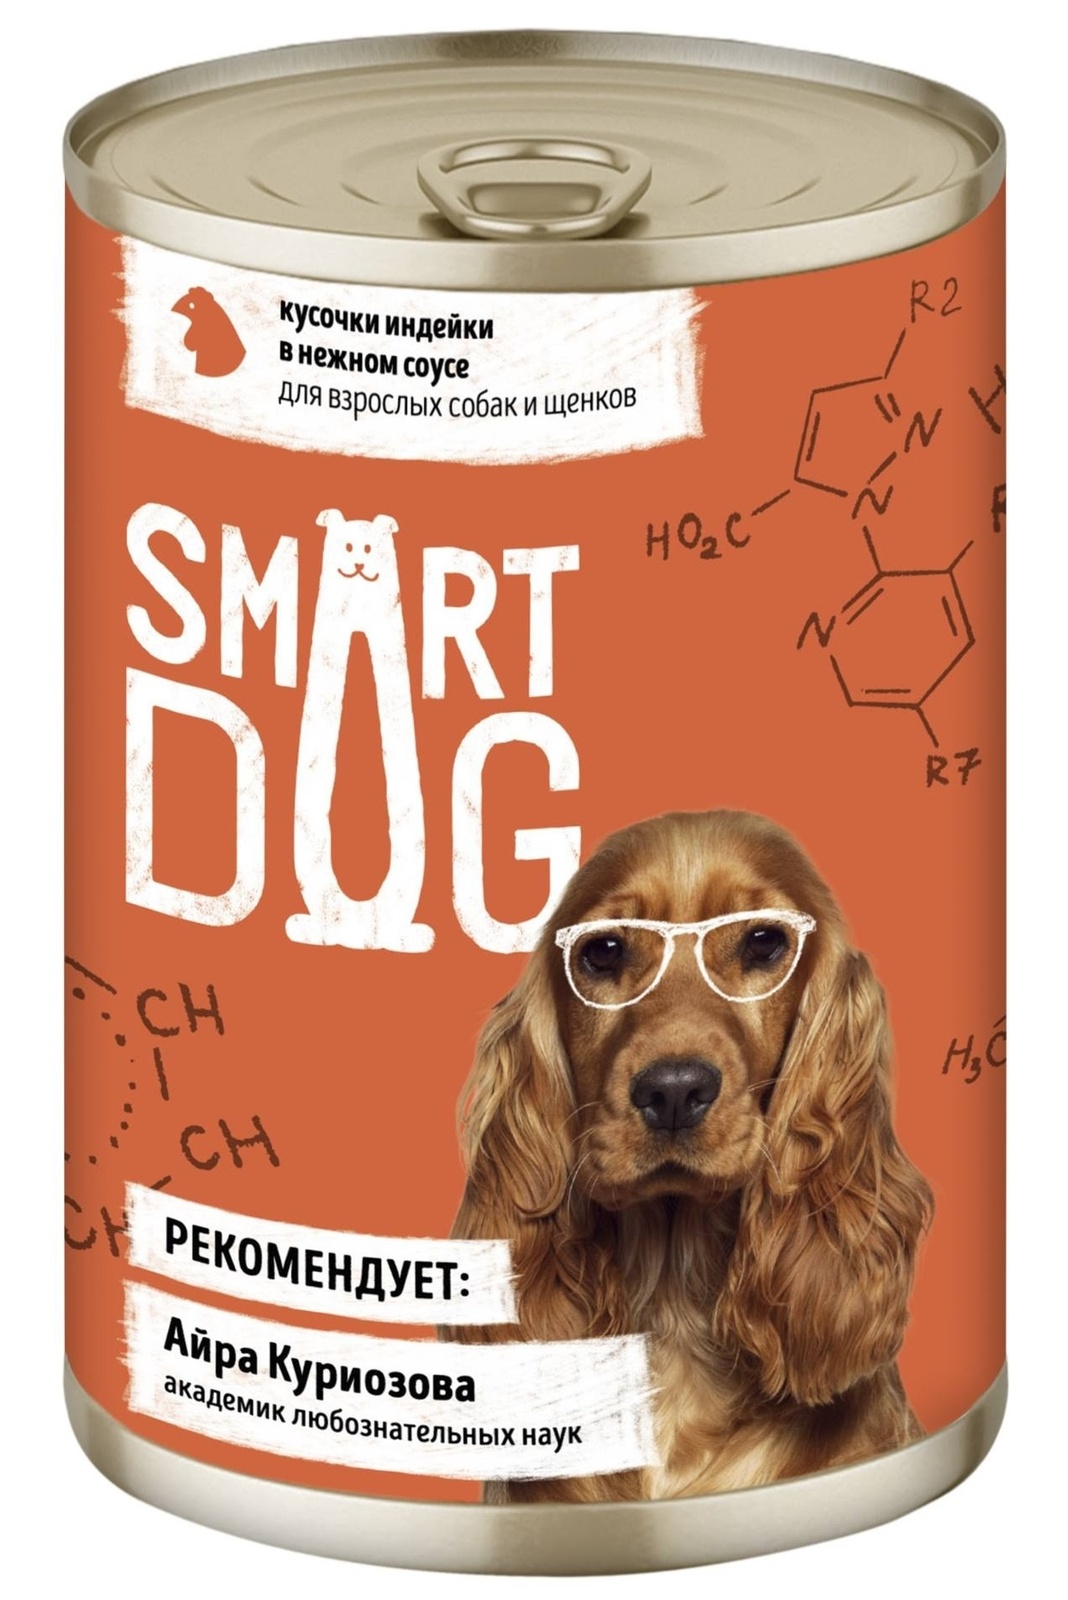 Smart Dog консервы Smart Dog консервы консервы для взрослых собак и щенков кусочки индейки в нежном соусе (400 г)